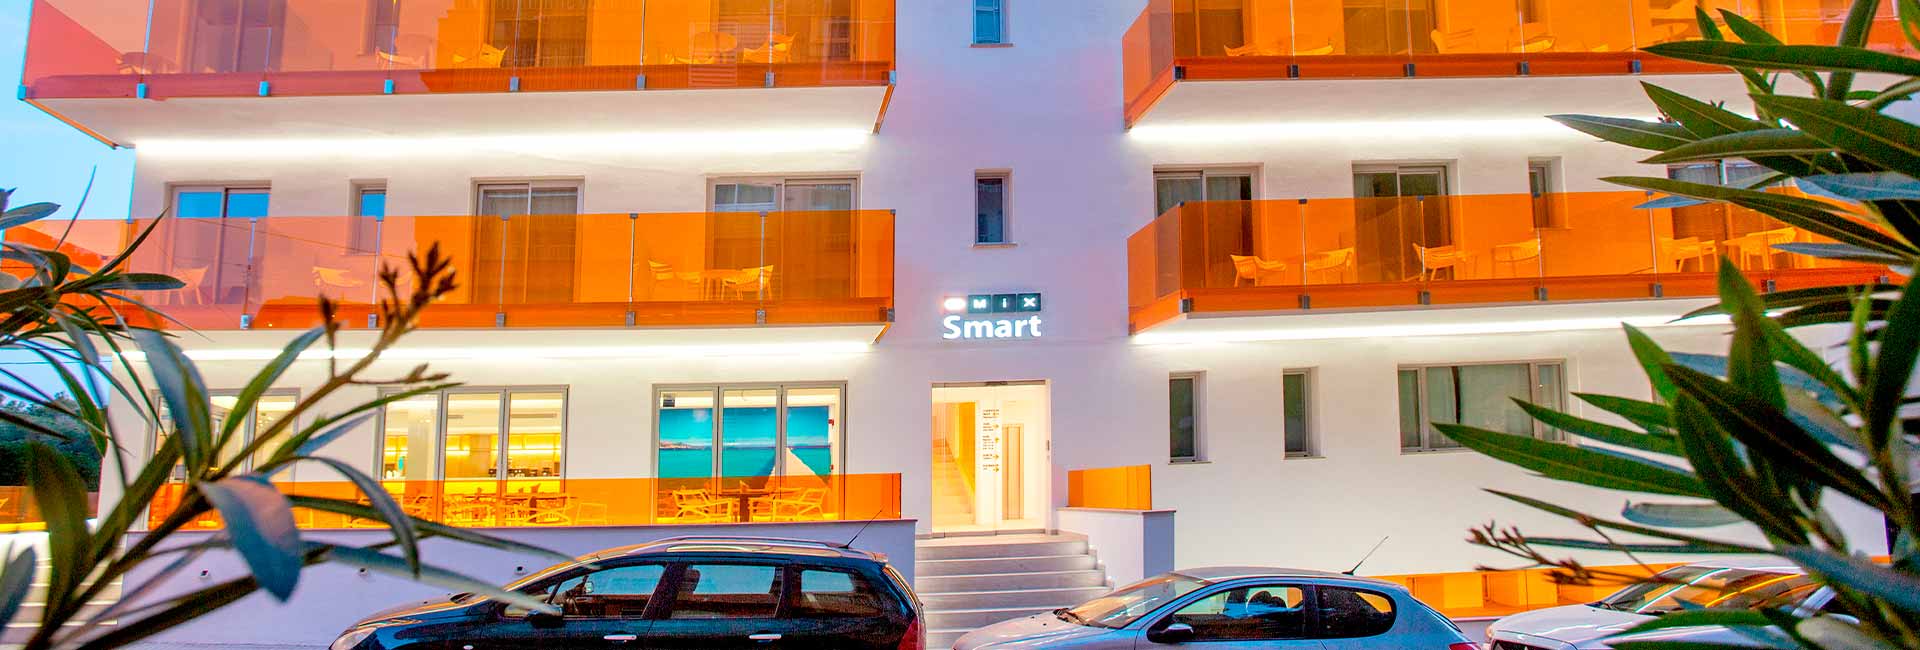 Treffen Sie das Mix Smart Hotel auf Mallorca